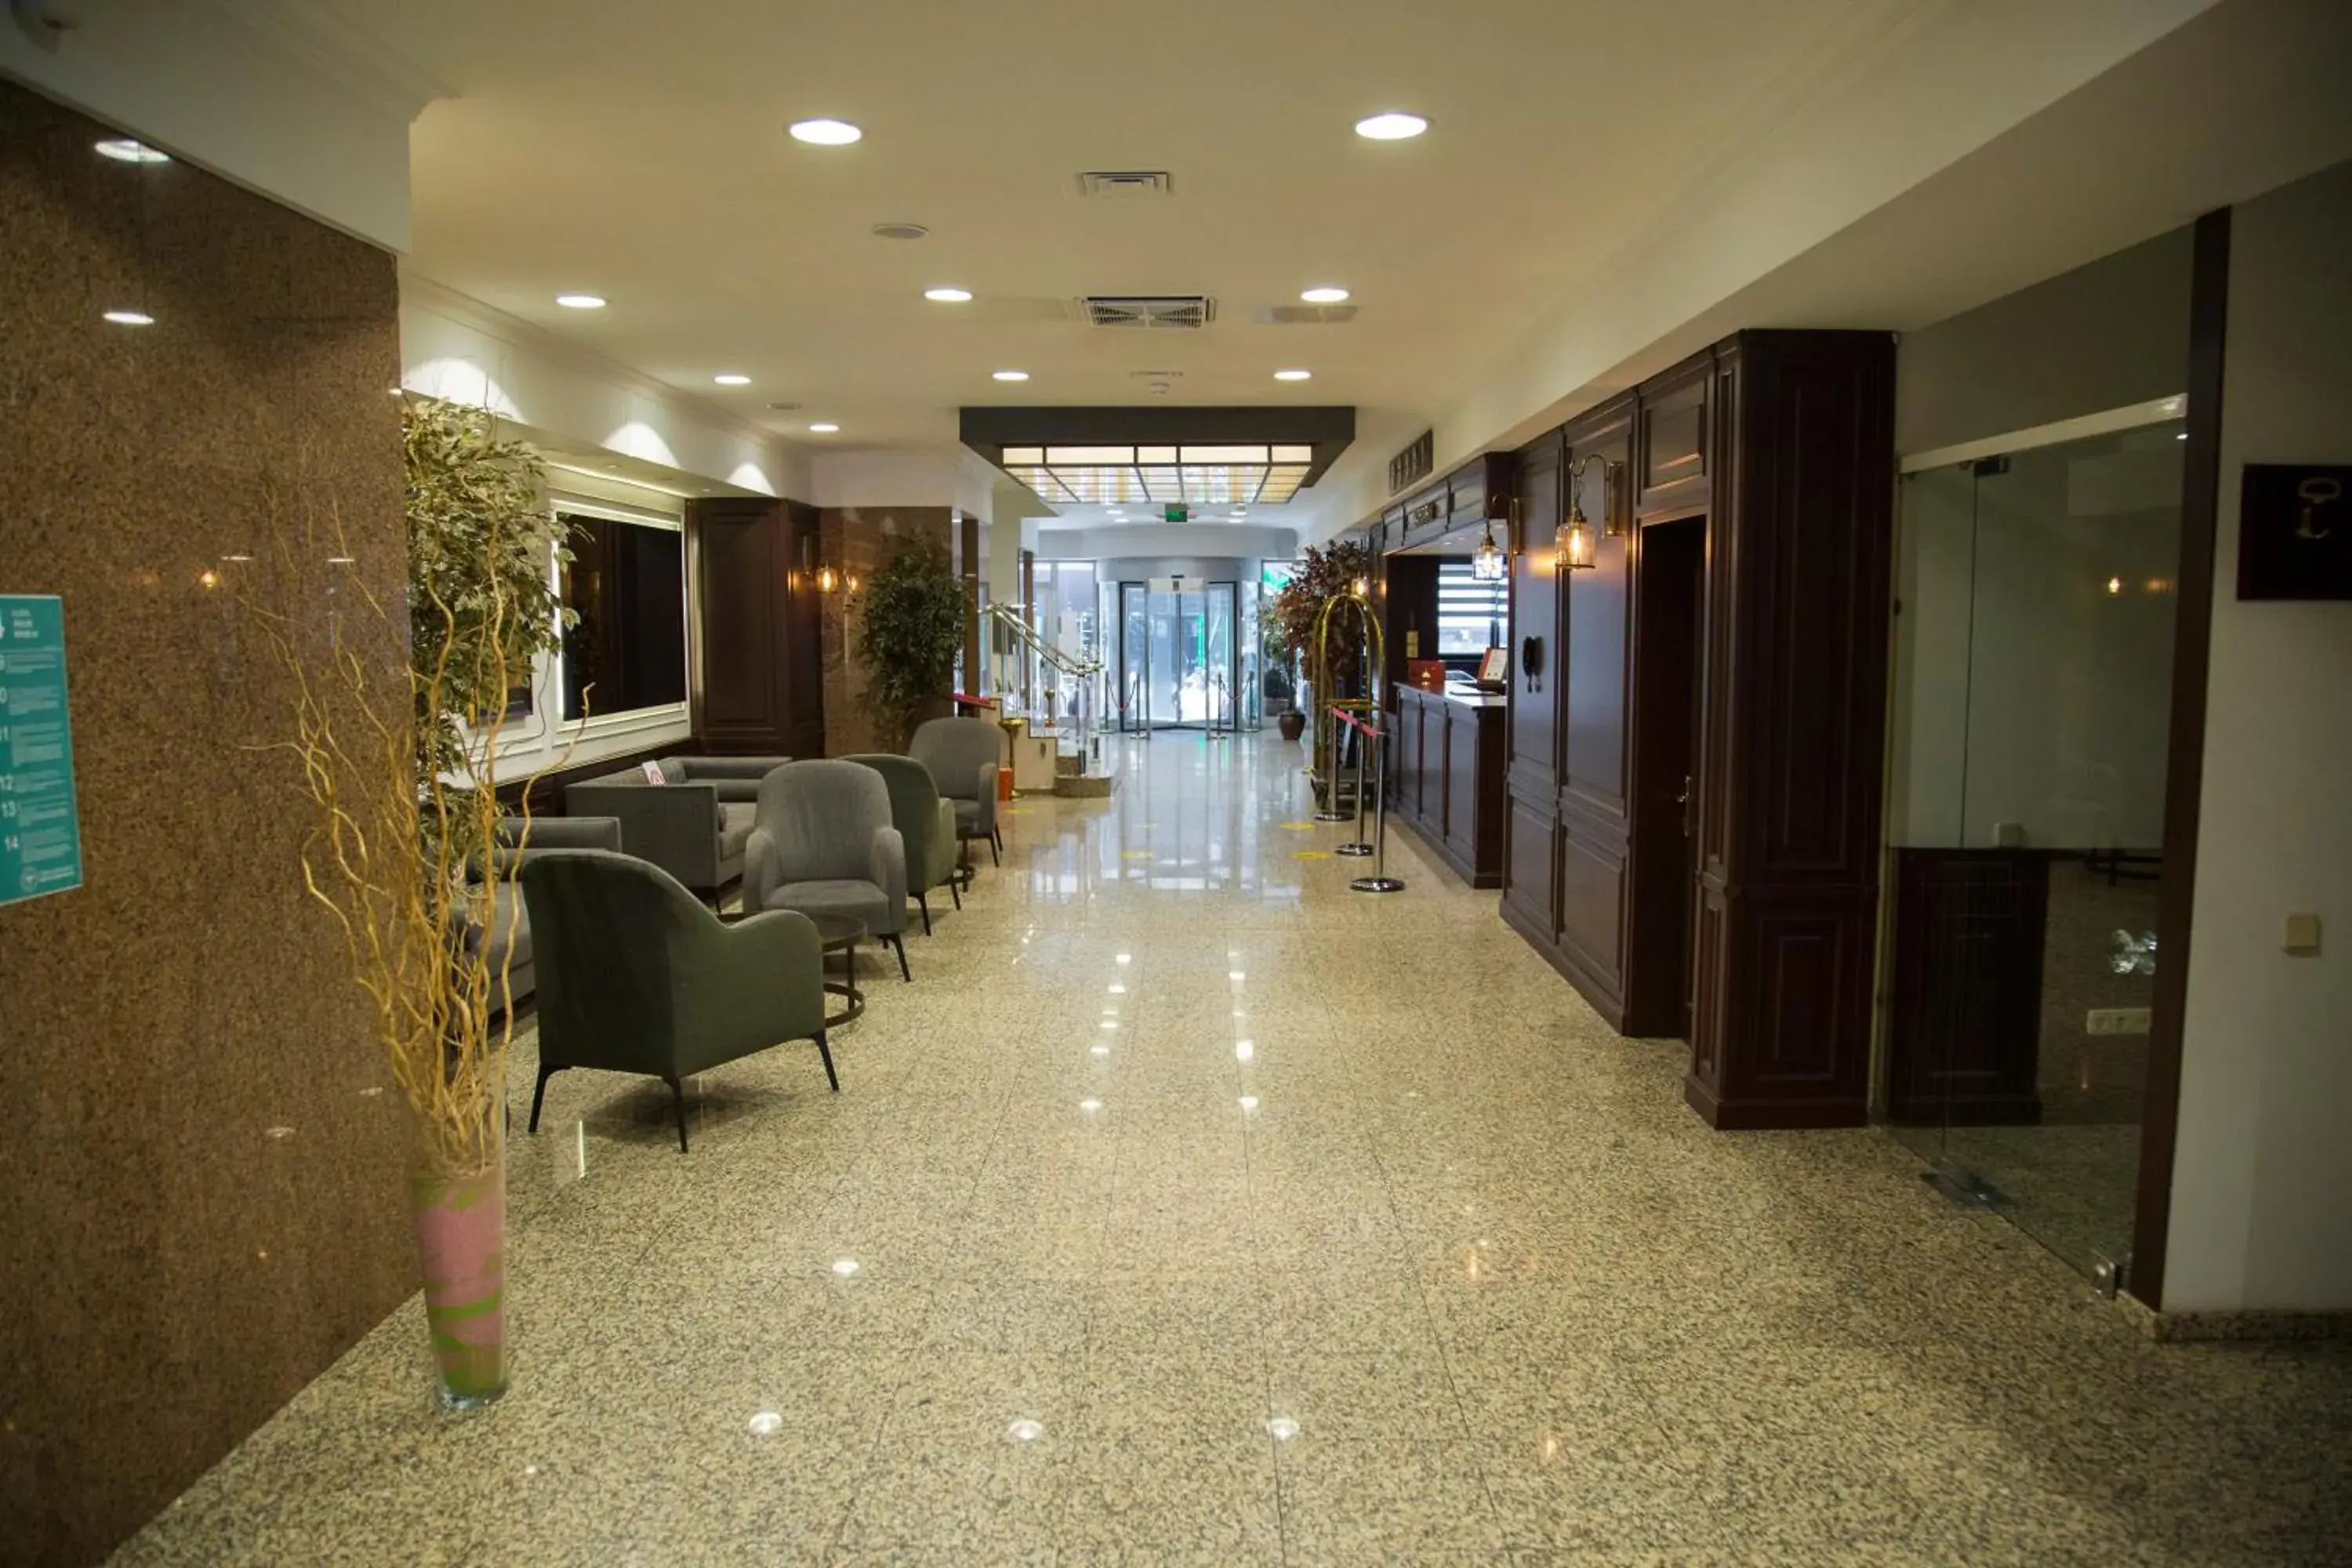 Lobby or reception, Lobby/Reception in Dila Hotel